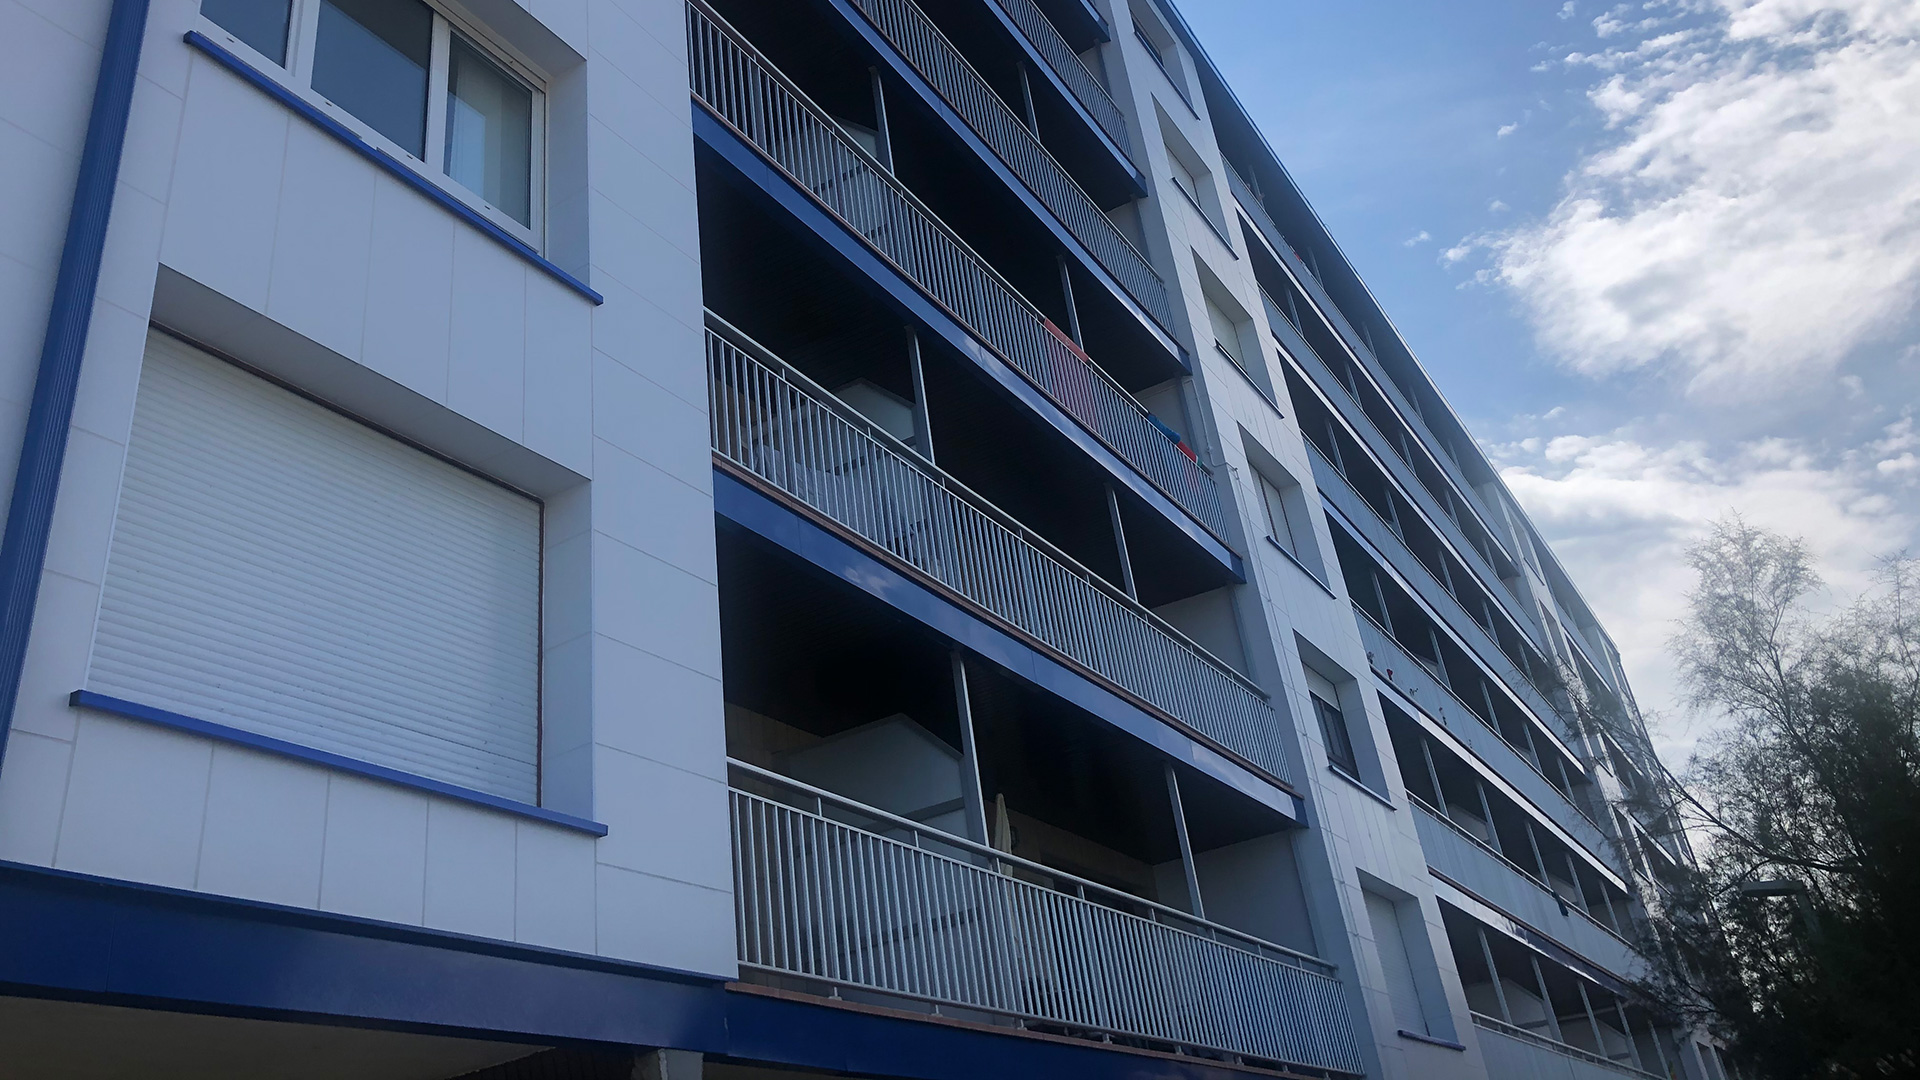 Rehabilitación de fachada y barandillas de edificio en Bakio